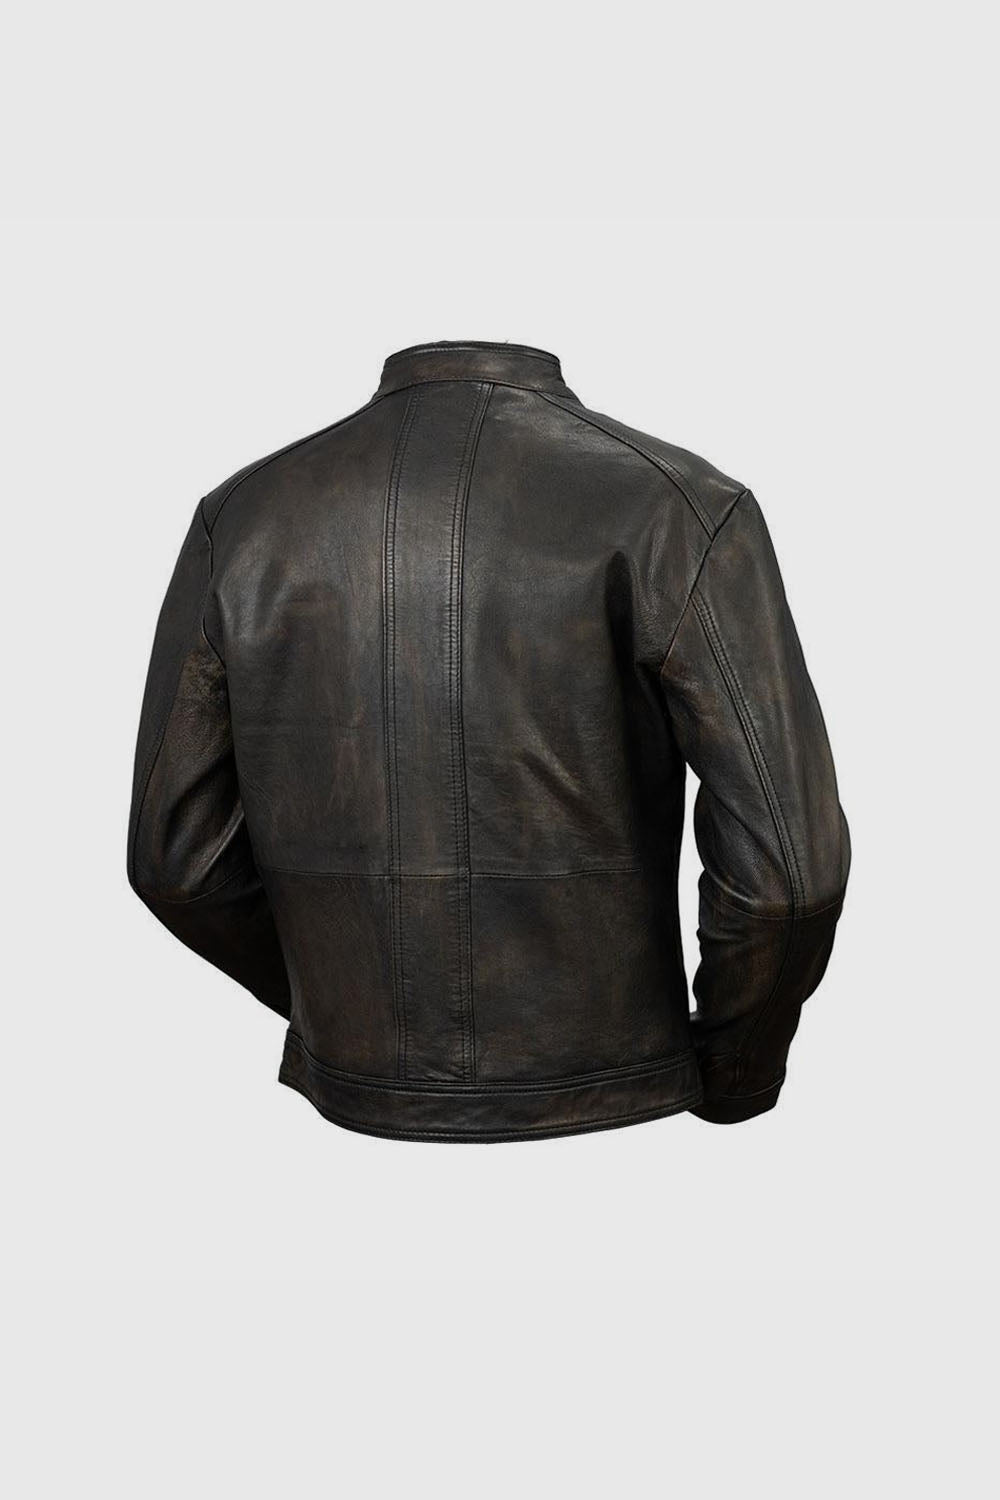 Cruiser Mens Leather Jacket